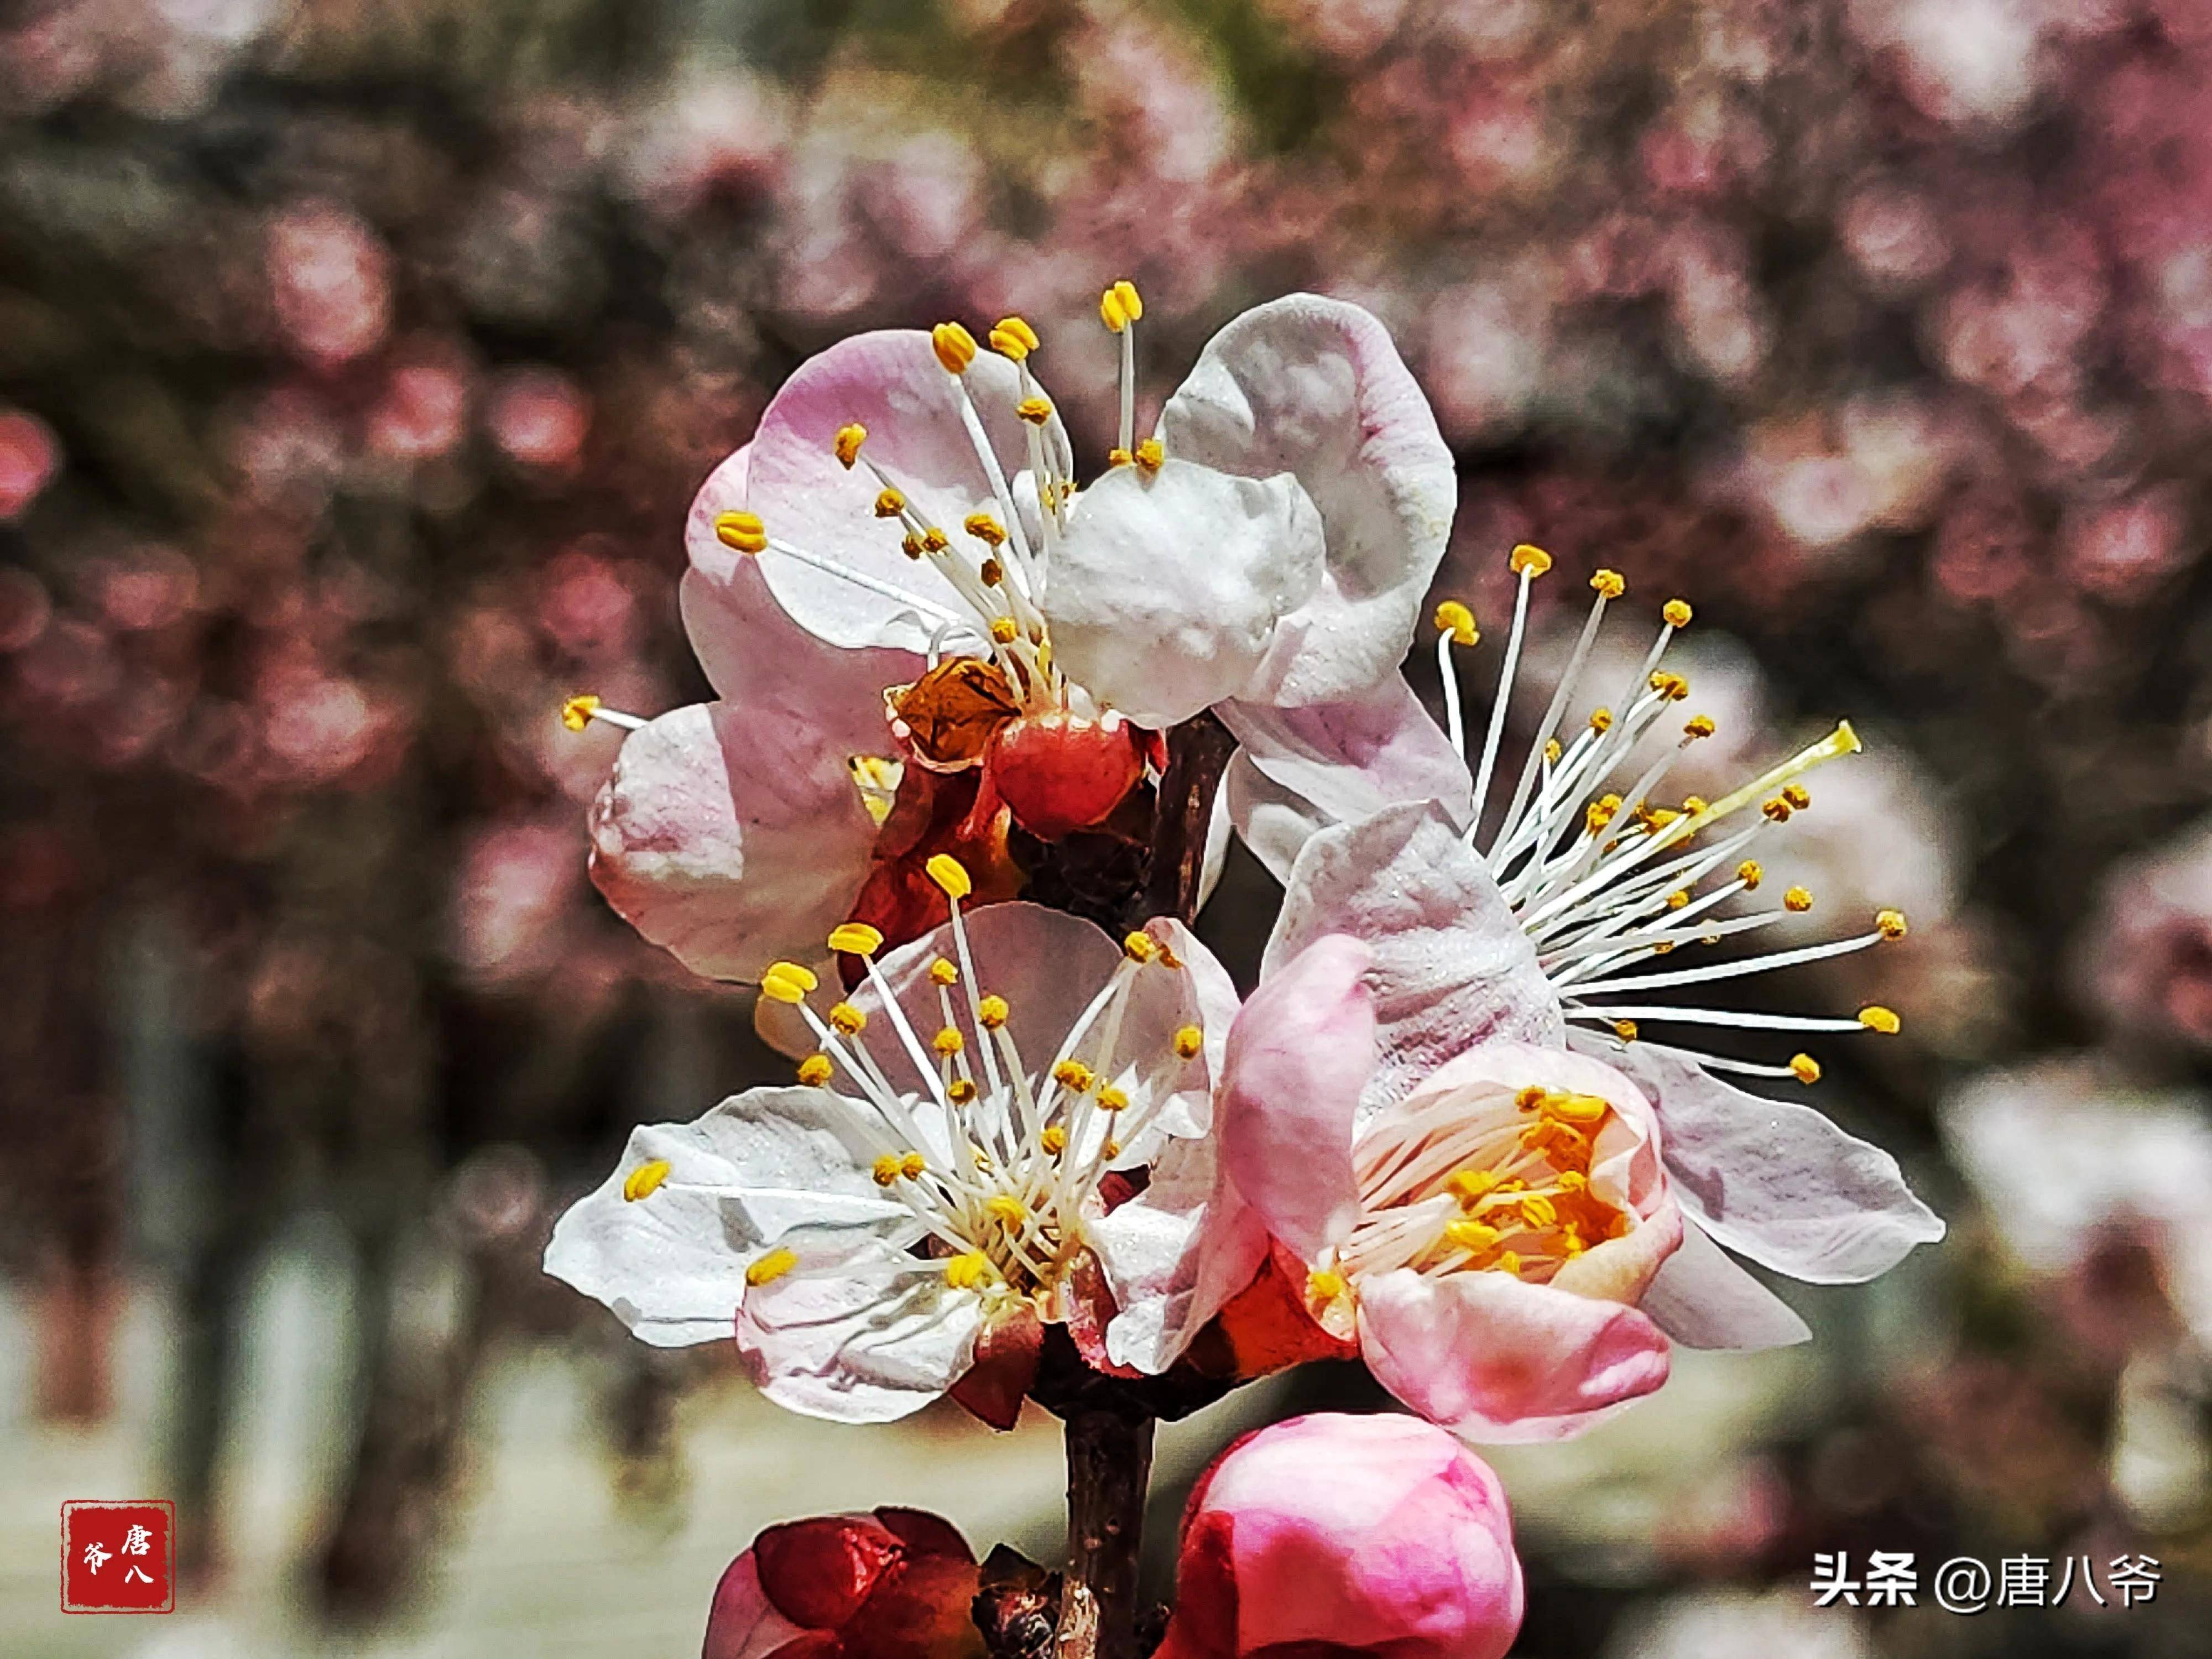 春天人们在粉白色杏花中尽情呼吸,享受醉人的风景